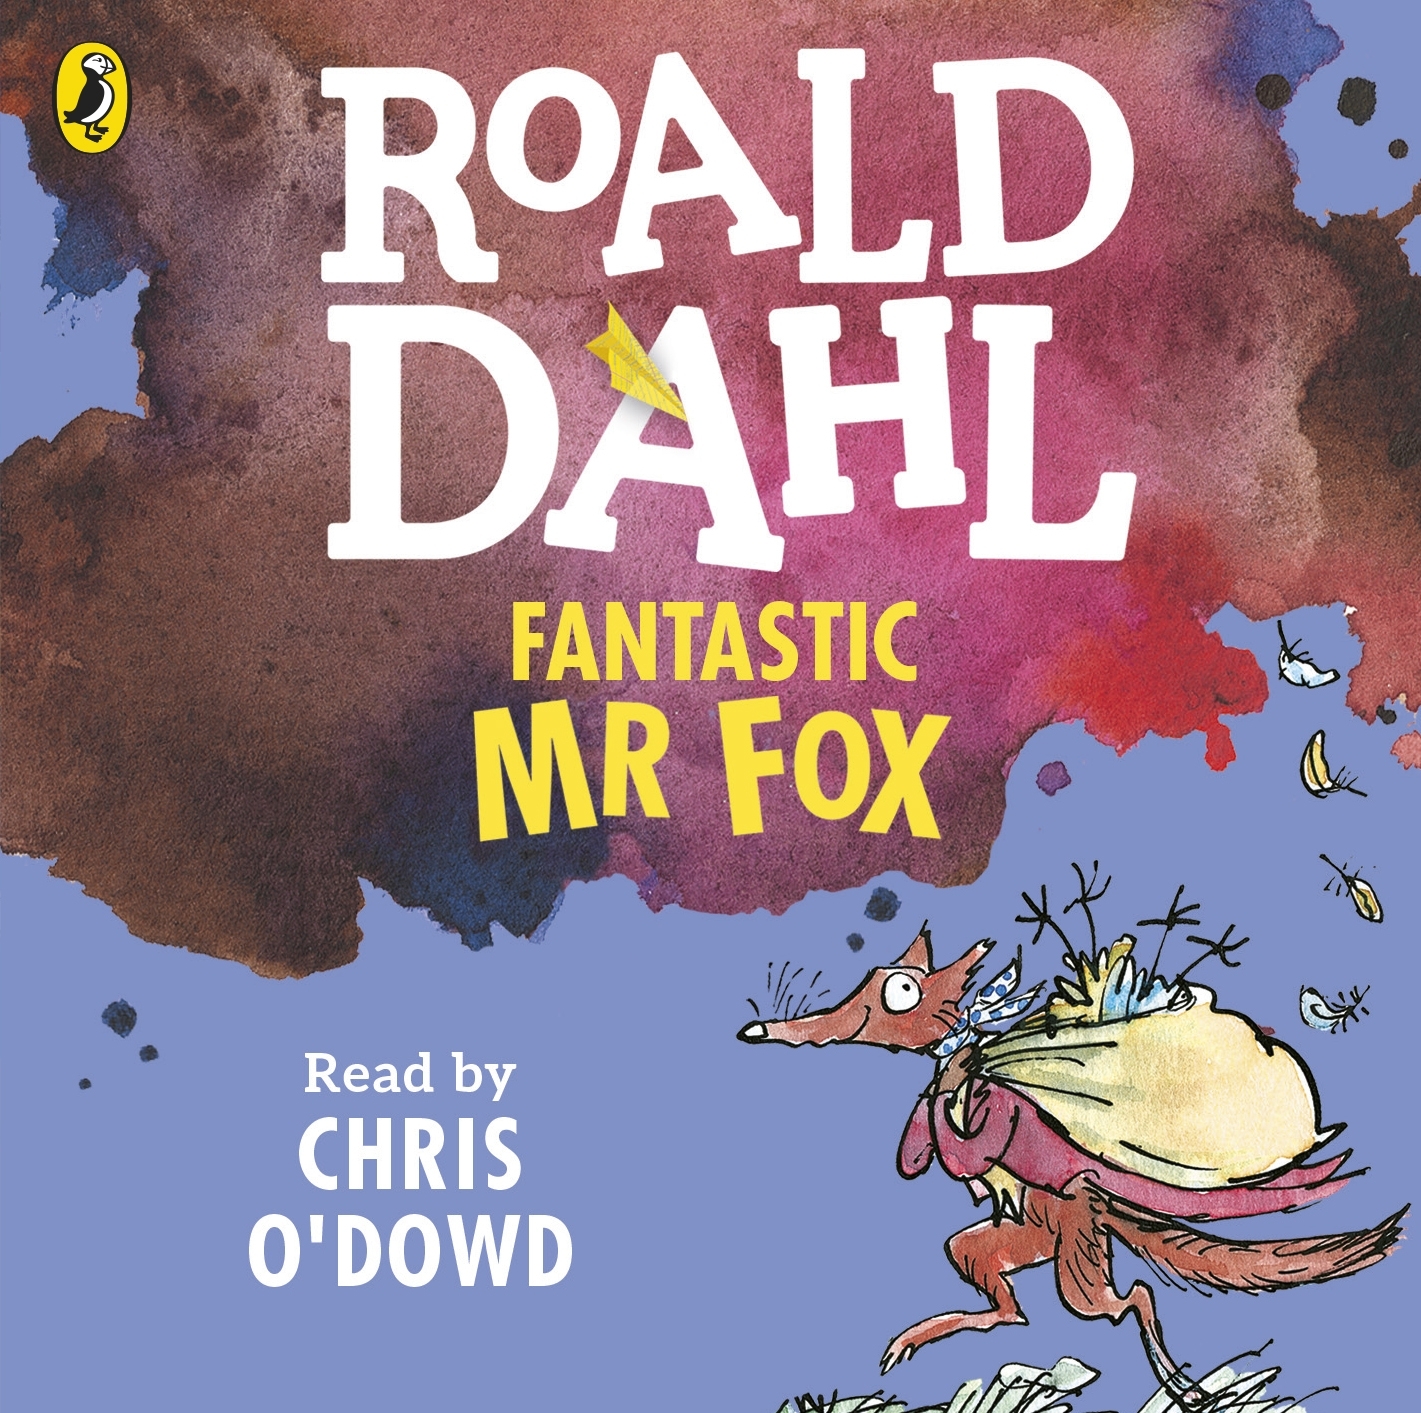 fantastic-mr-fox-by-roald-dahl-penguin-books-australia